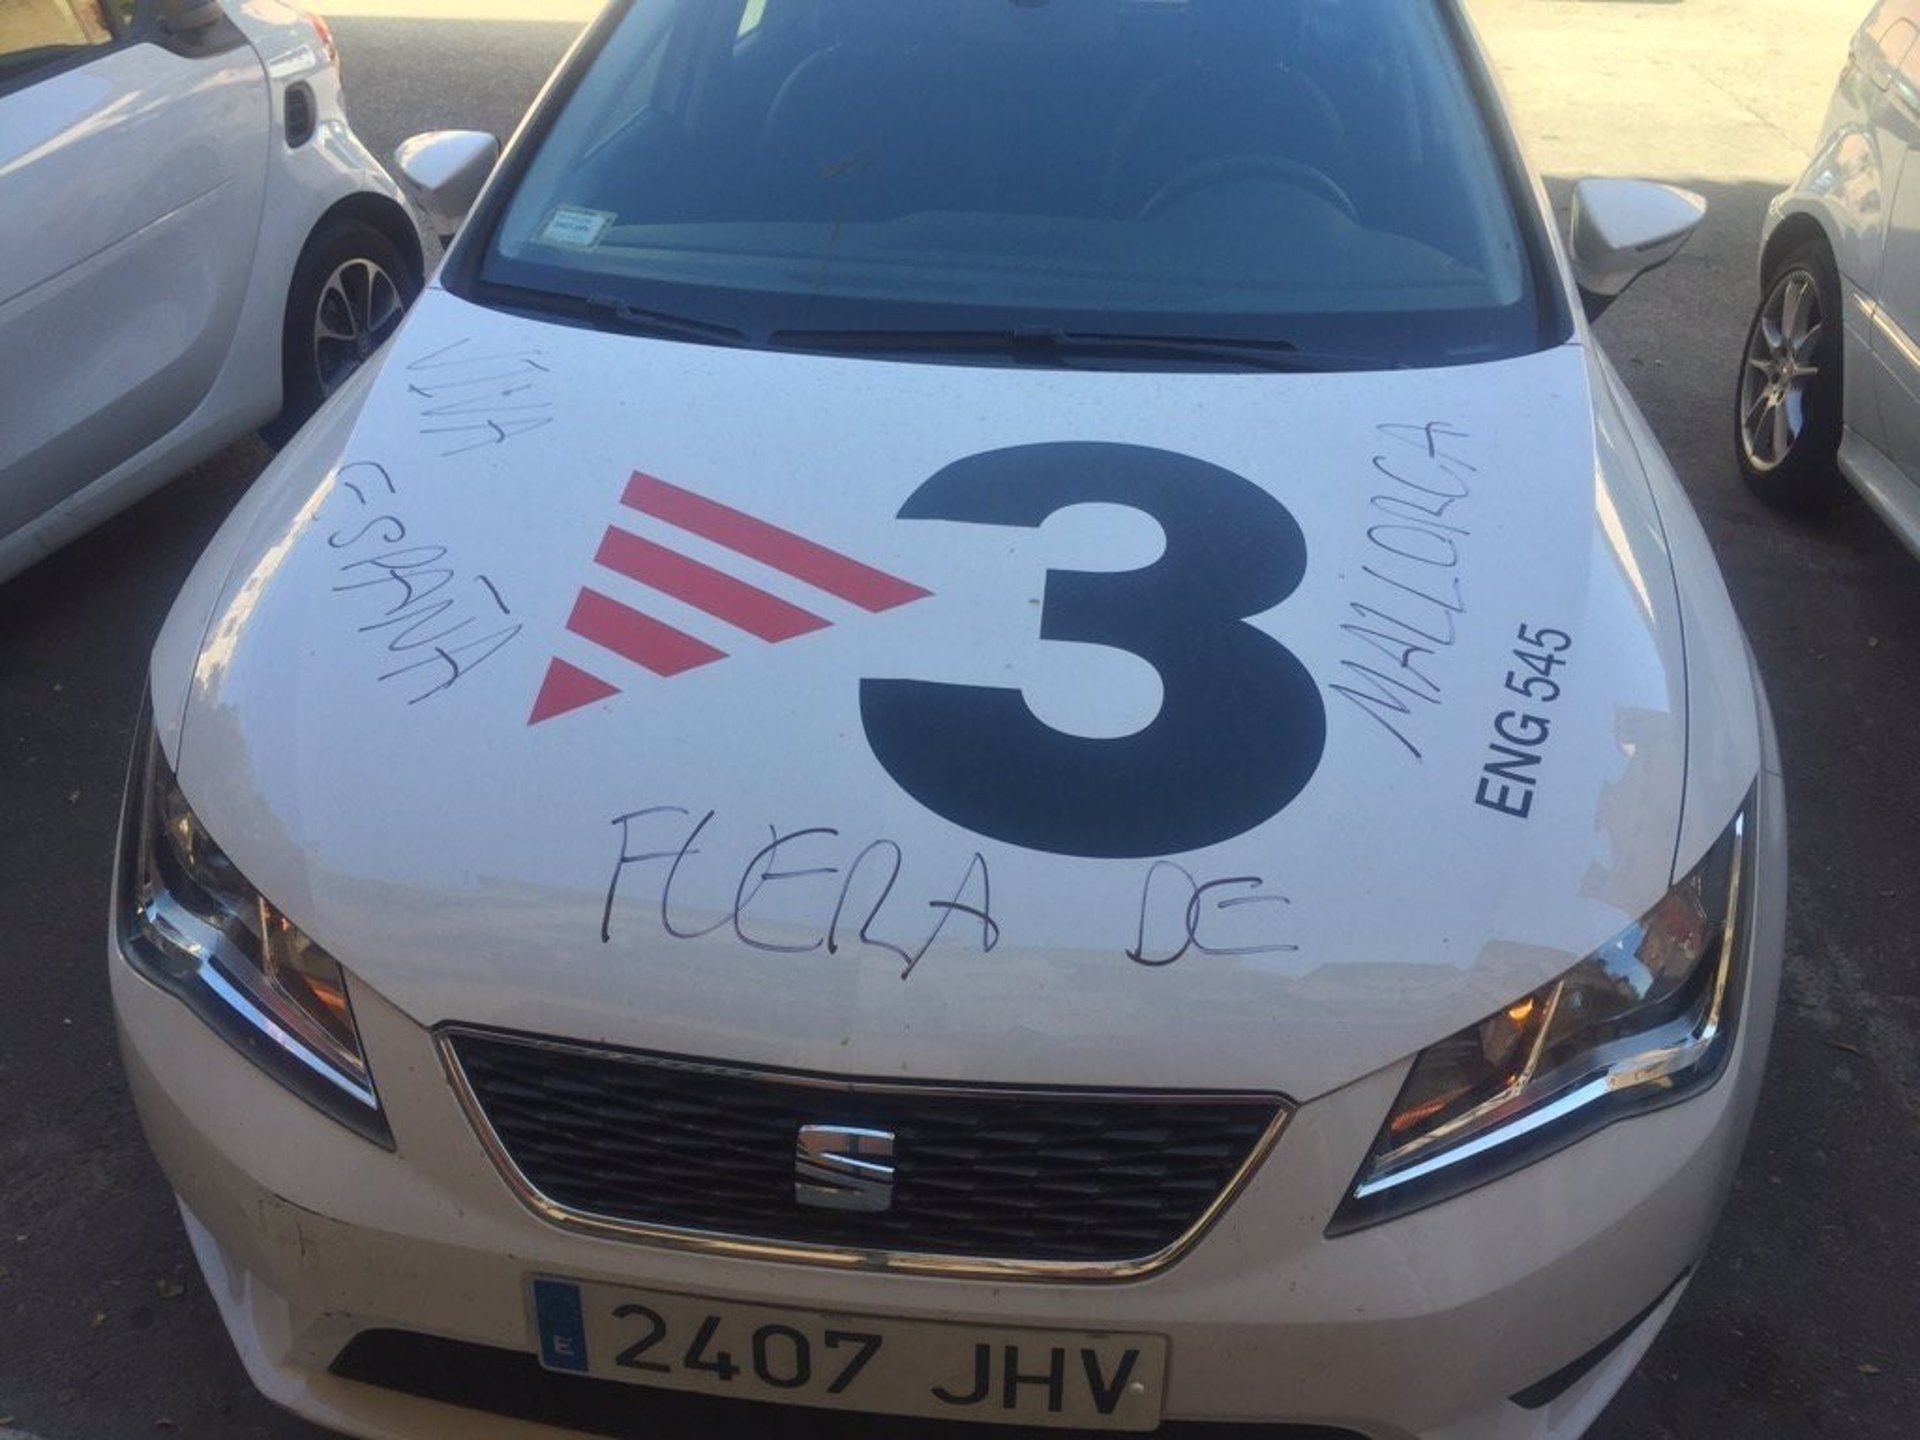 Escriben 'Fuera de Mallorca' y 'Viva España' en el coche de TV3 en Baleares